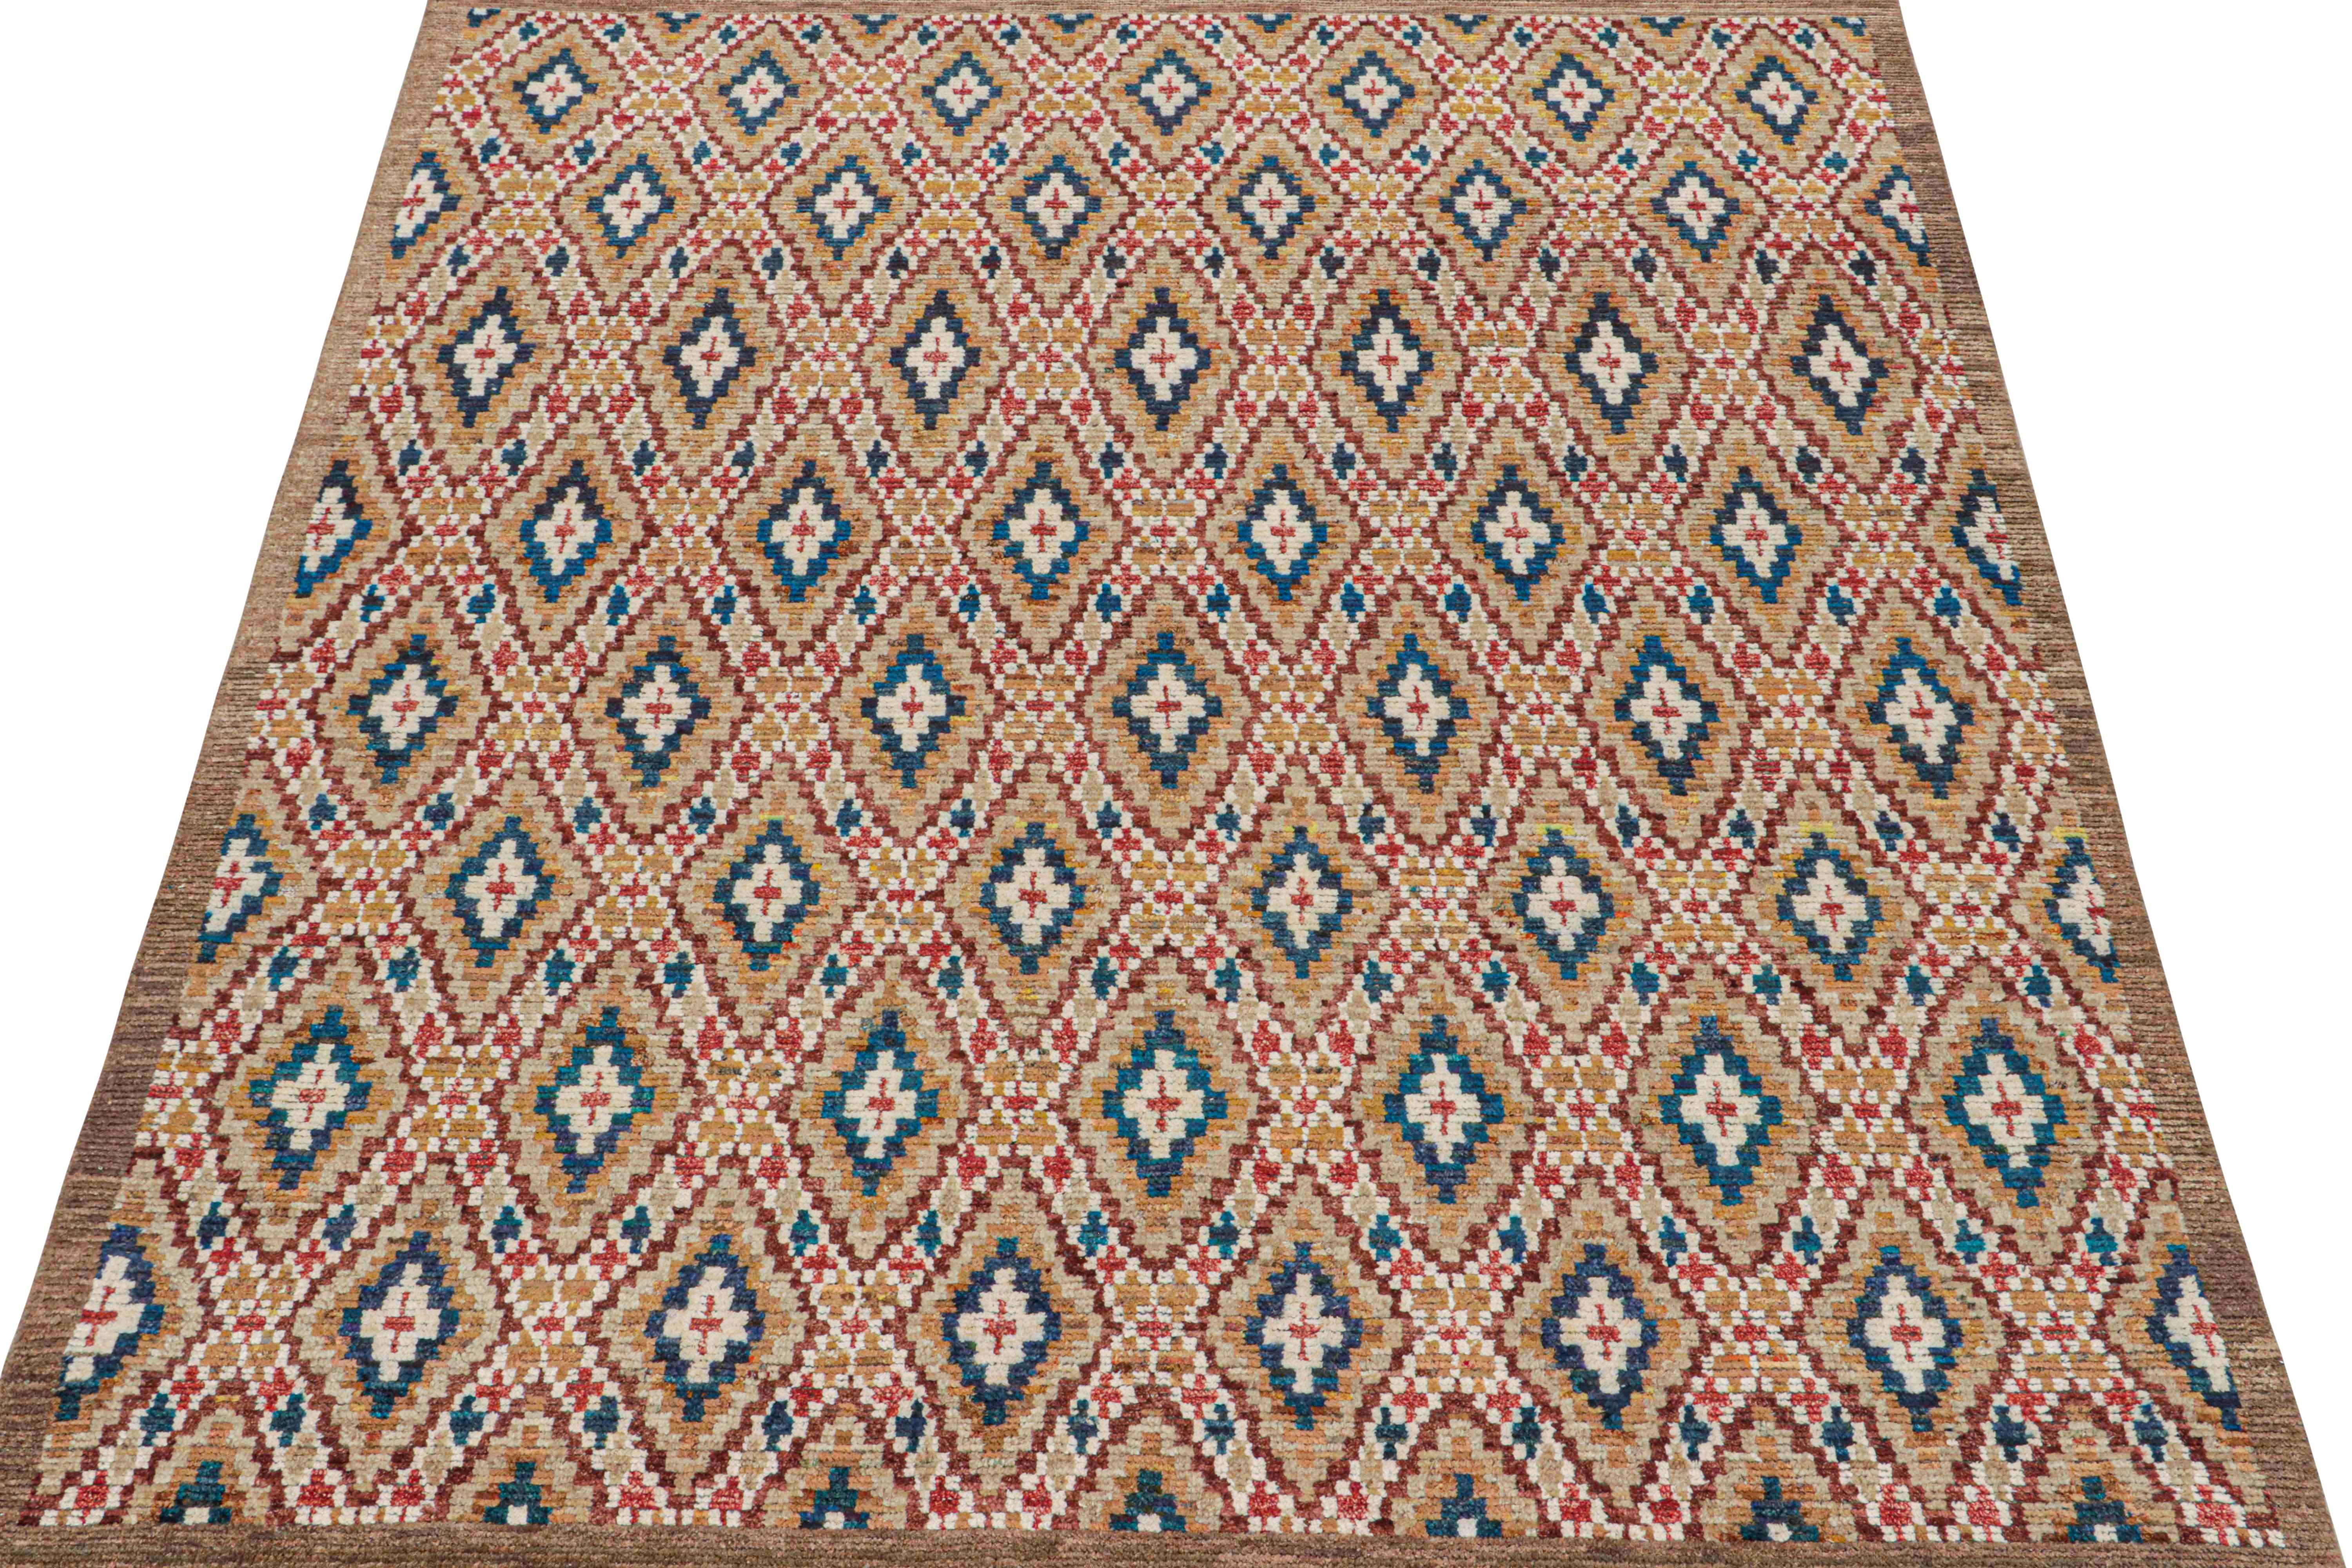 Ce tapis 8x10 est un nouvel ajout à la collection de tapis marocains de Rug & Kilim. Noué à la main en laine et en soie, son design reprend la sensibilité tribale classique dans une nouvelle qualité moderne.

Ce modèle particulier présente des